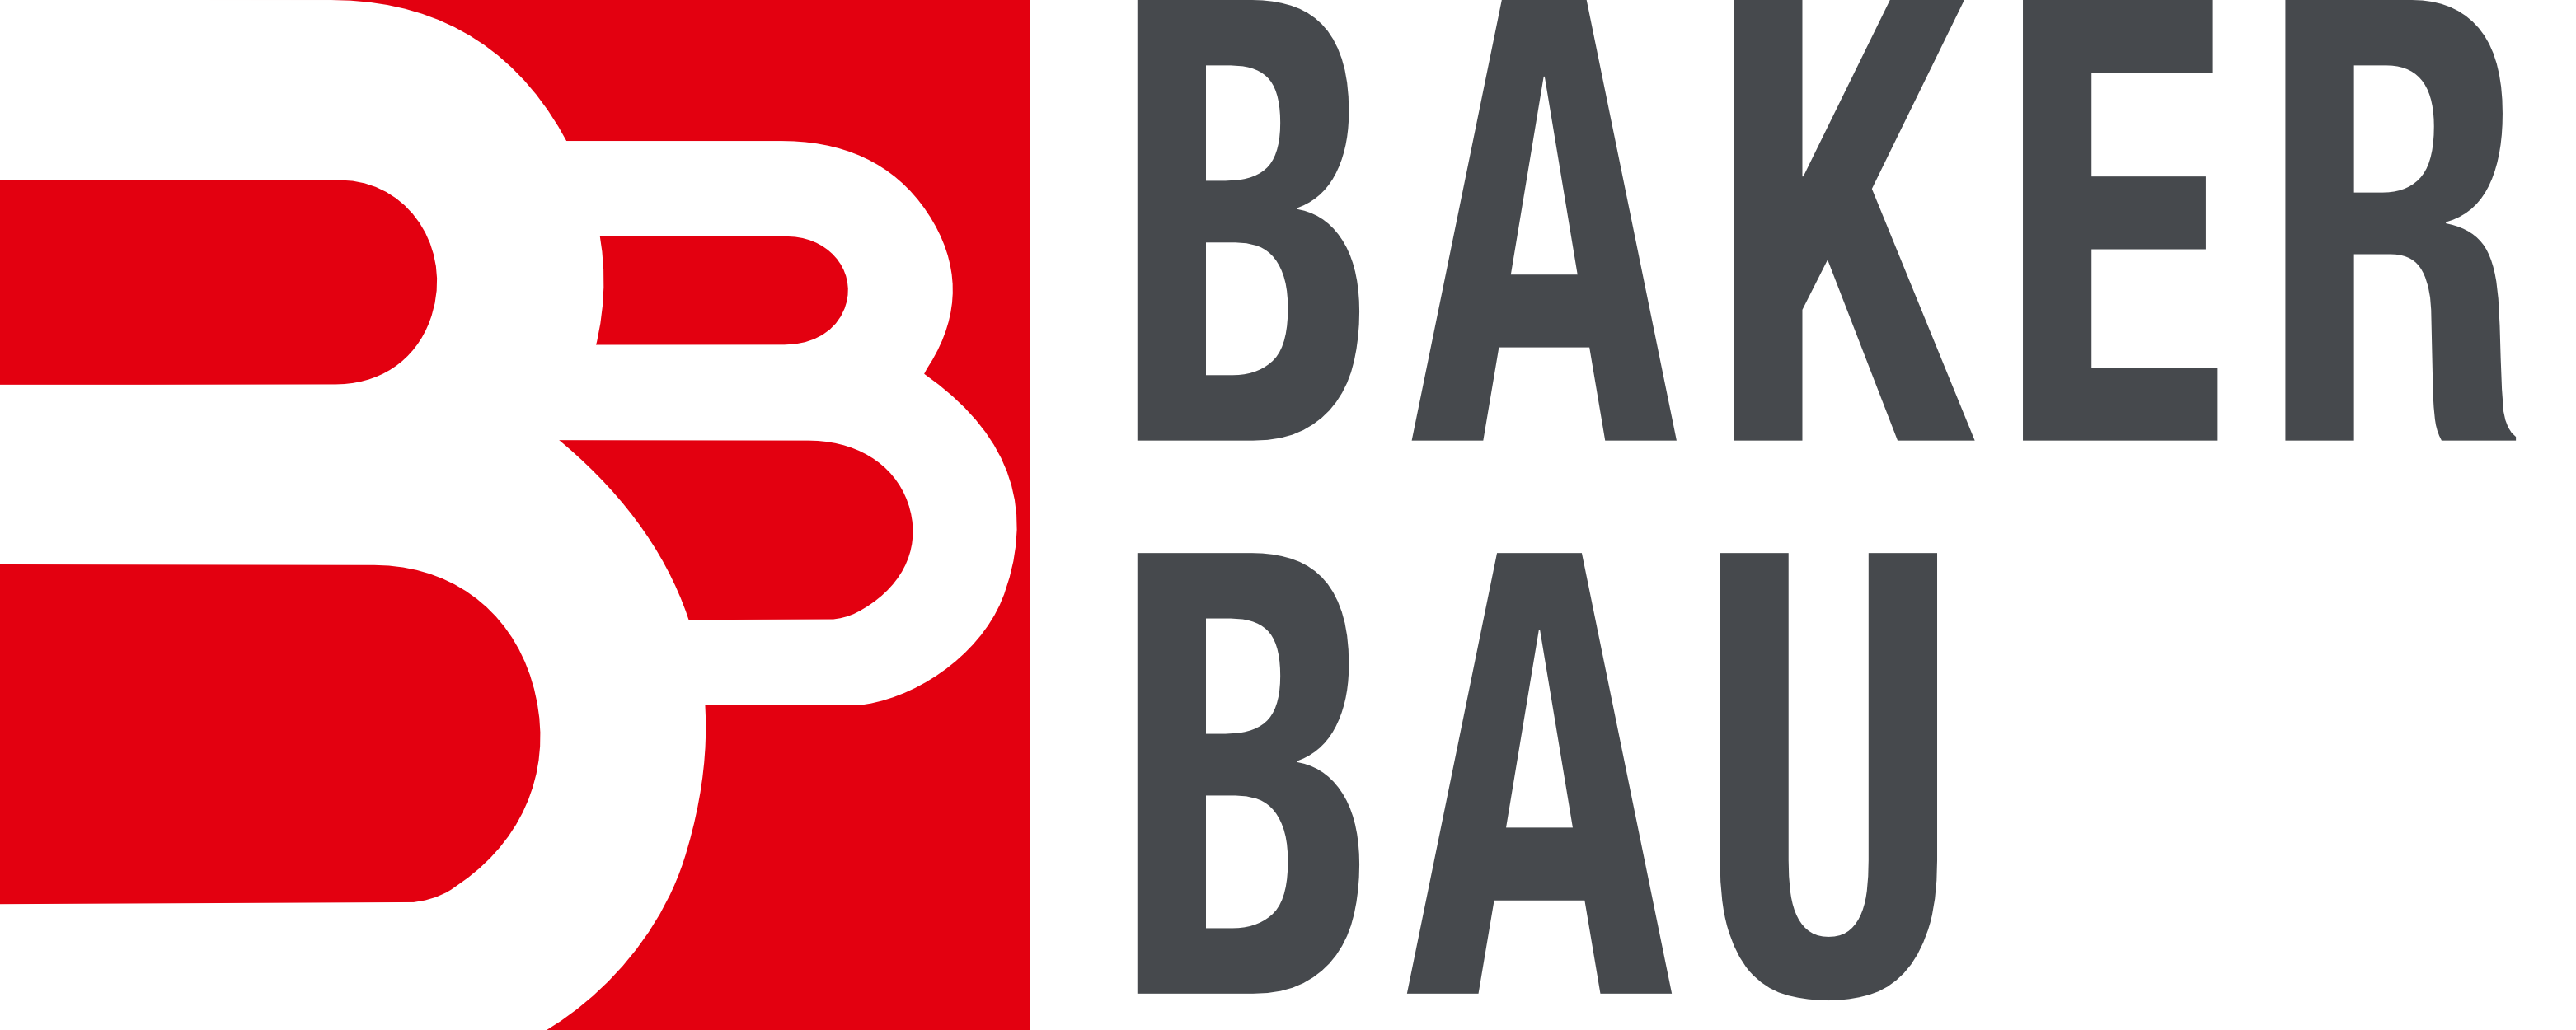 Baker Bau GmbH | Bauunternehmen